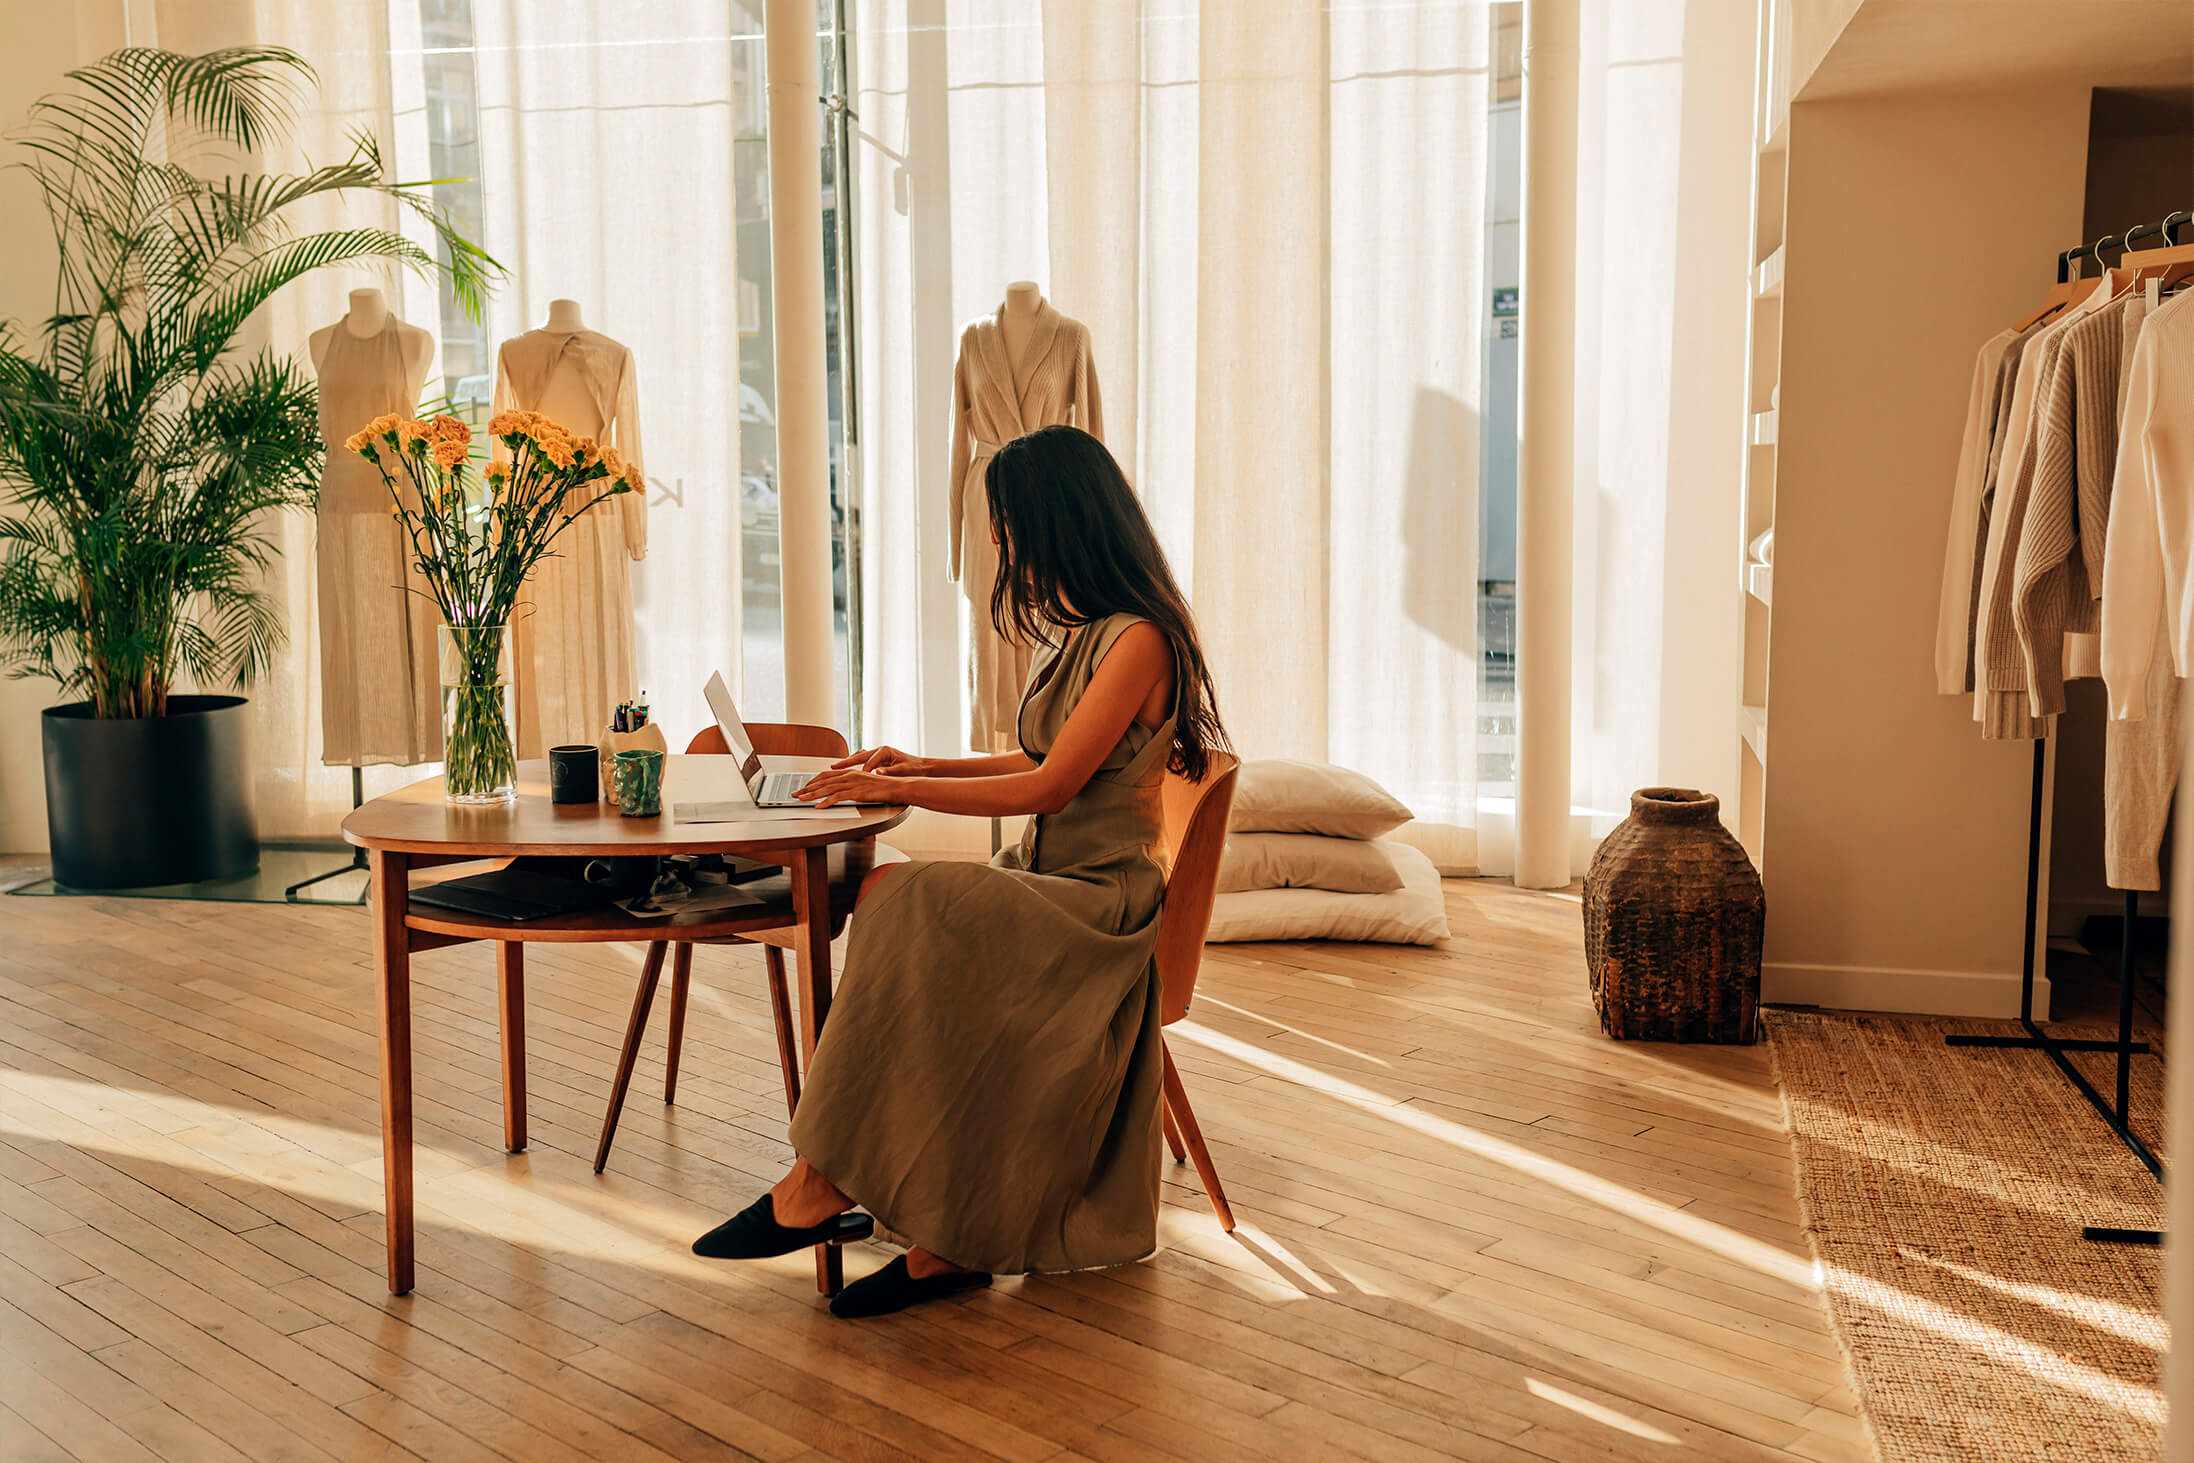 Billede af Le Kasha-designer, der sidder foran et bord i et varmt oplyst atelier.